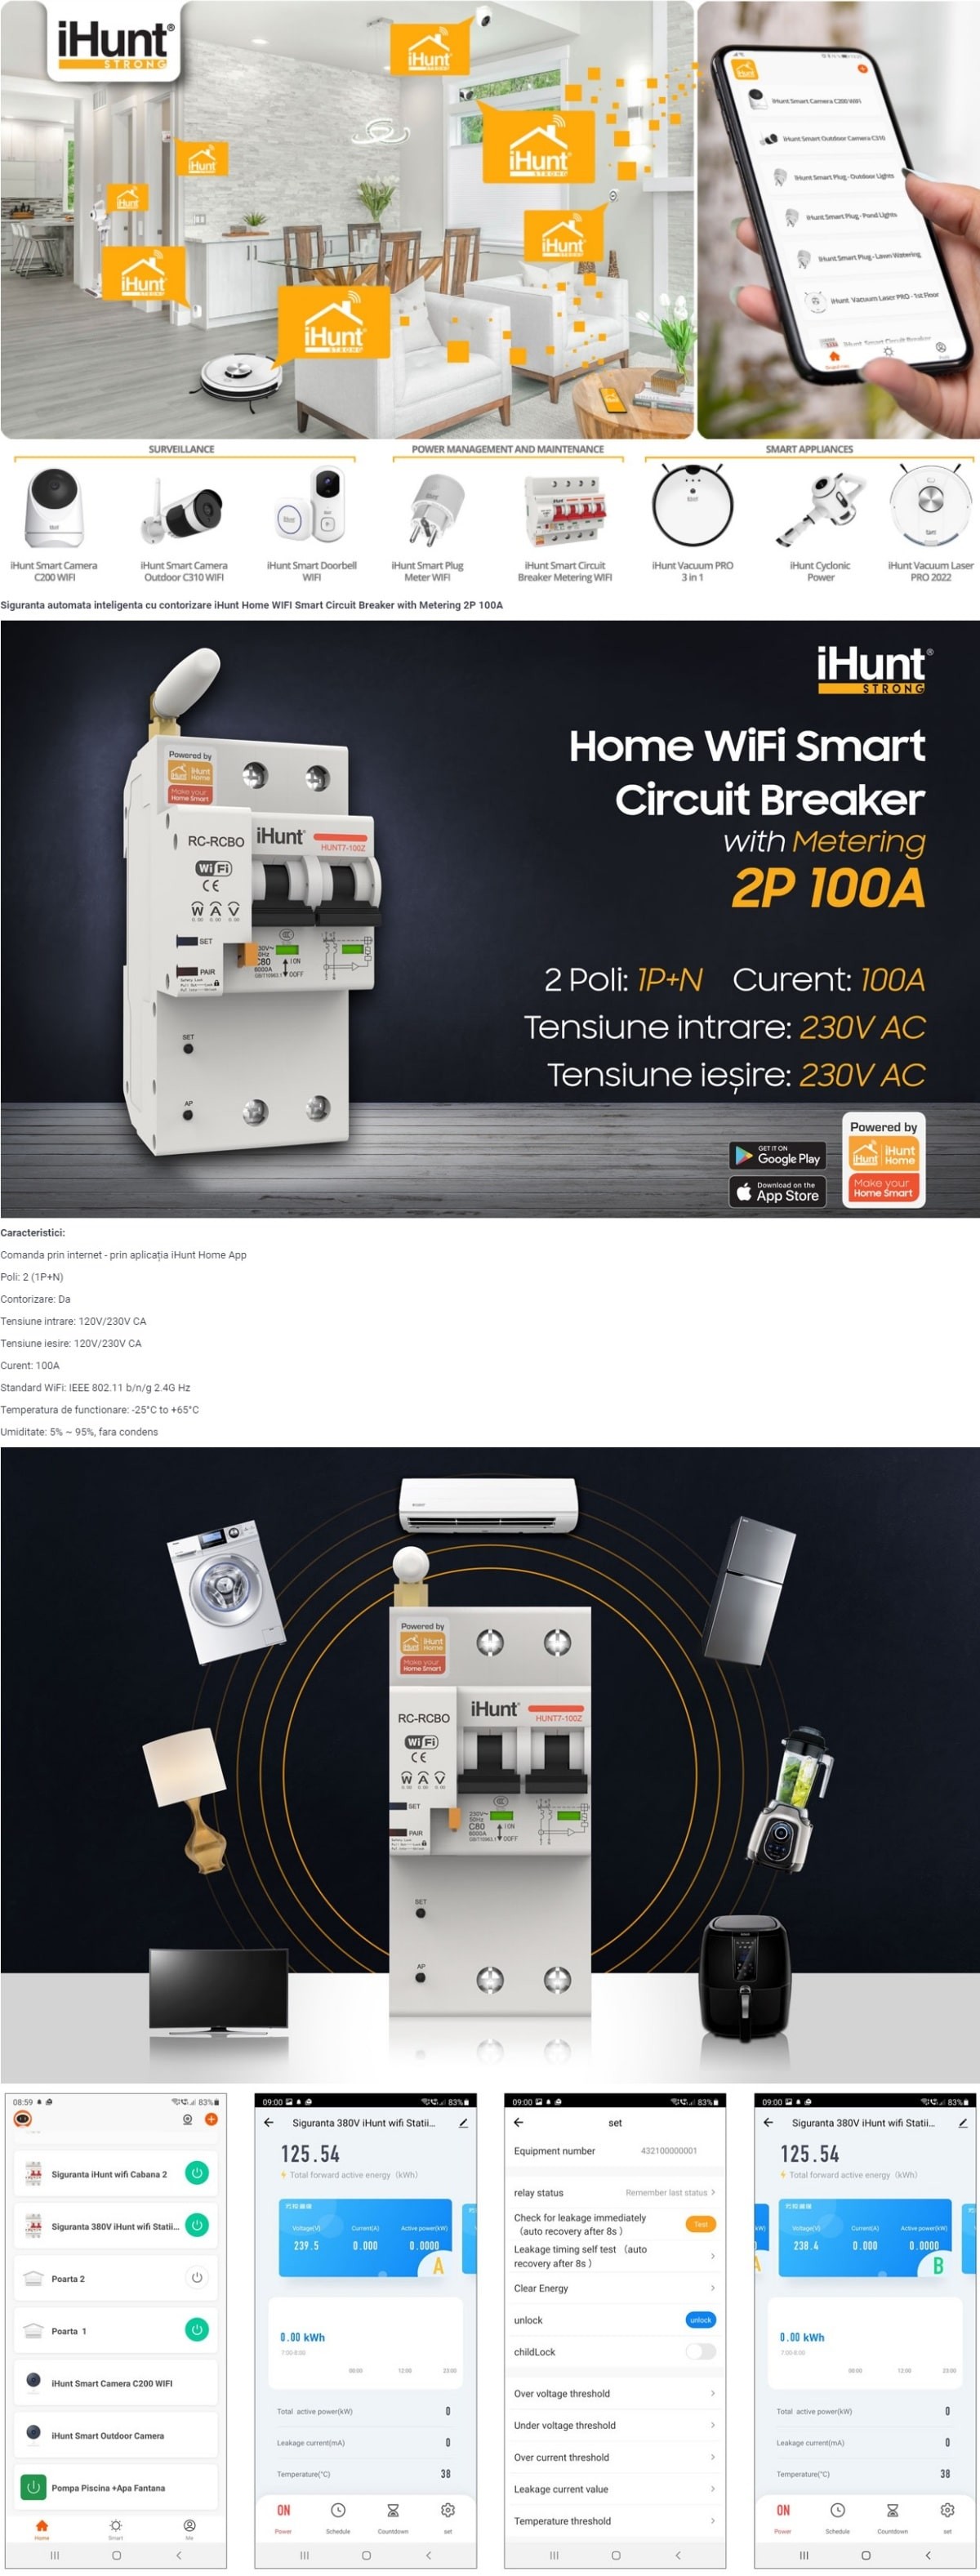 iHunt-Home-WIFI-Smart-Circuit-Breaker-Metering-2P-100Aa74e64af108b5f89.jpg